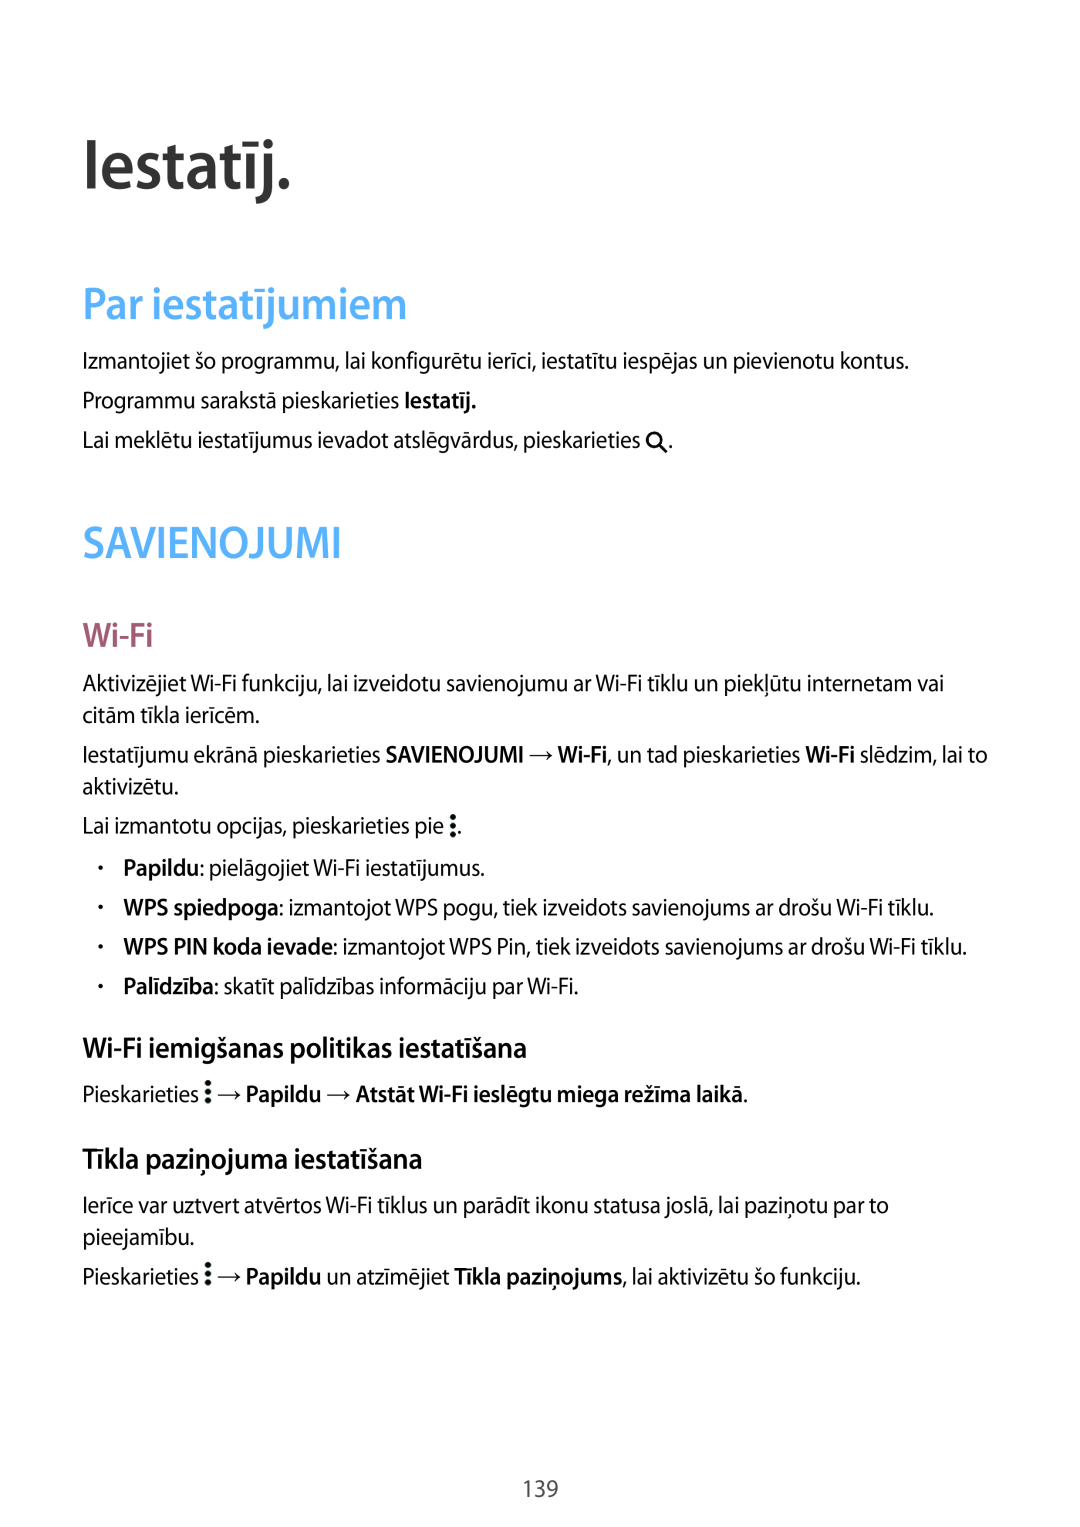 Samsung SM-T800NZWASEB manual Iestatīj, Par iestatījumiem, Savienojumi, Wi-Fi iemigšanas politikas iestatīšana 